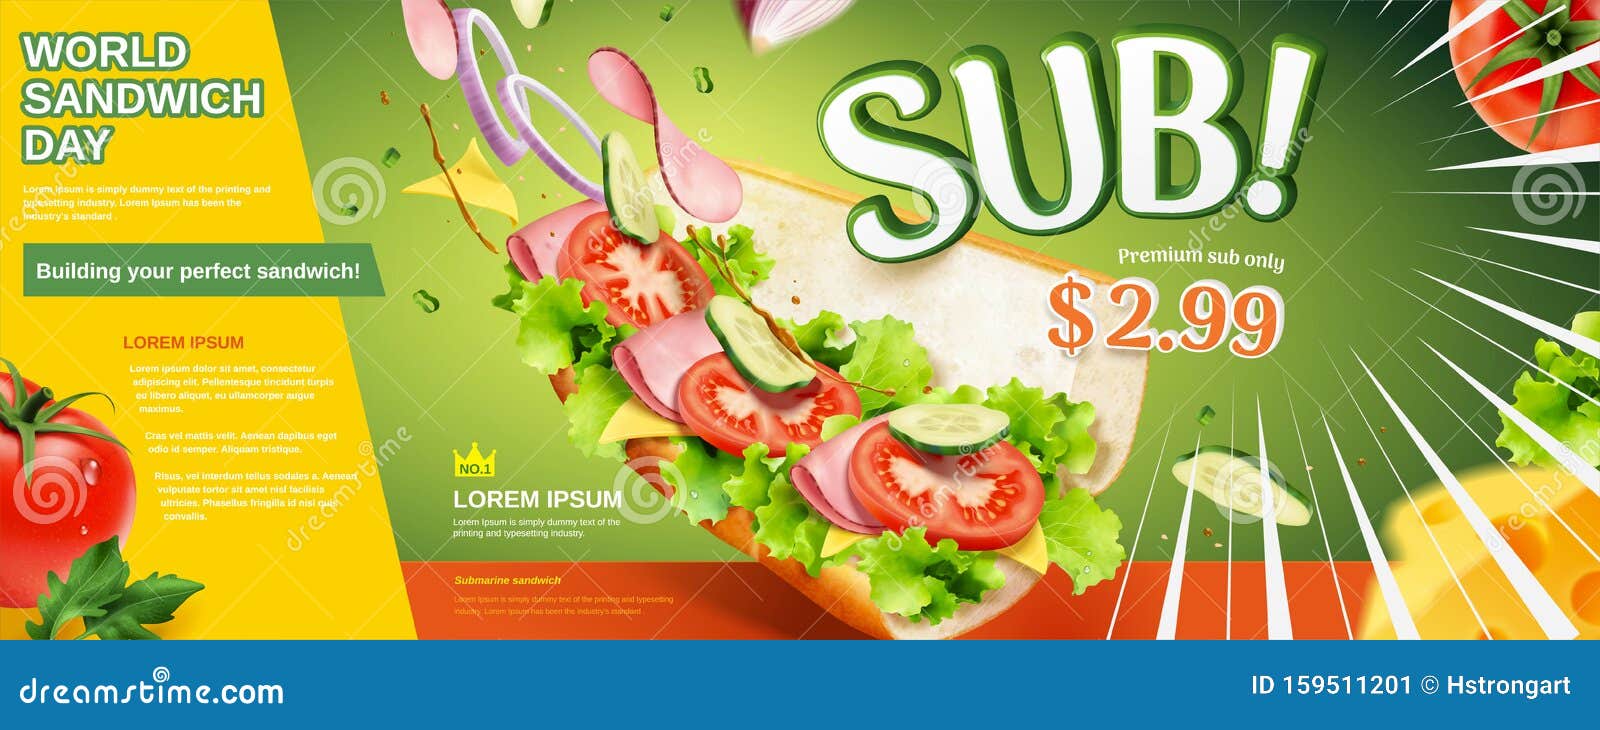 fresh submarine sandwich ads